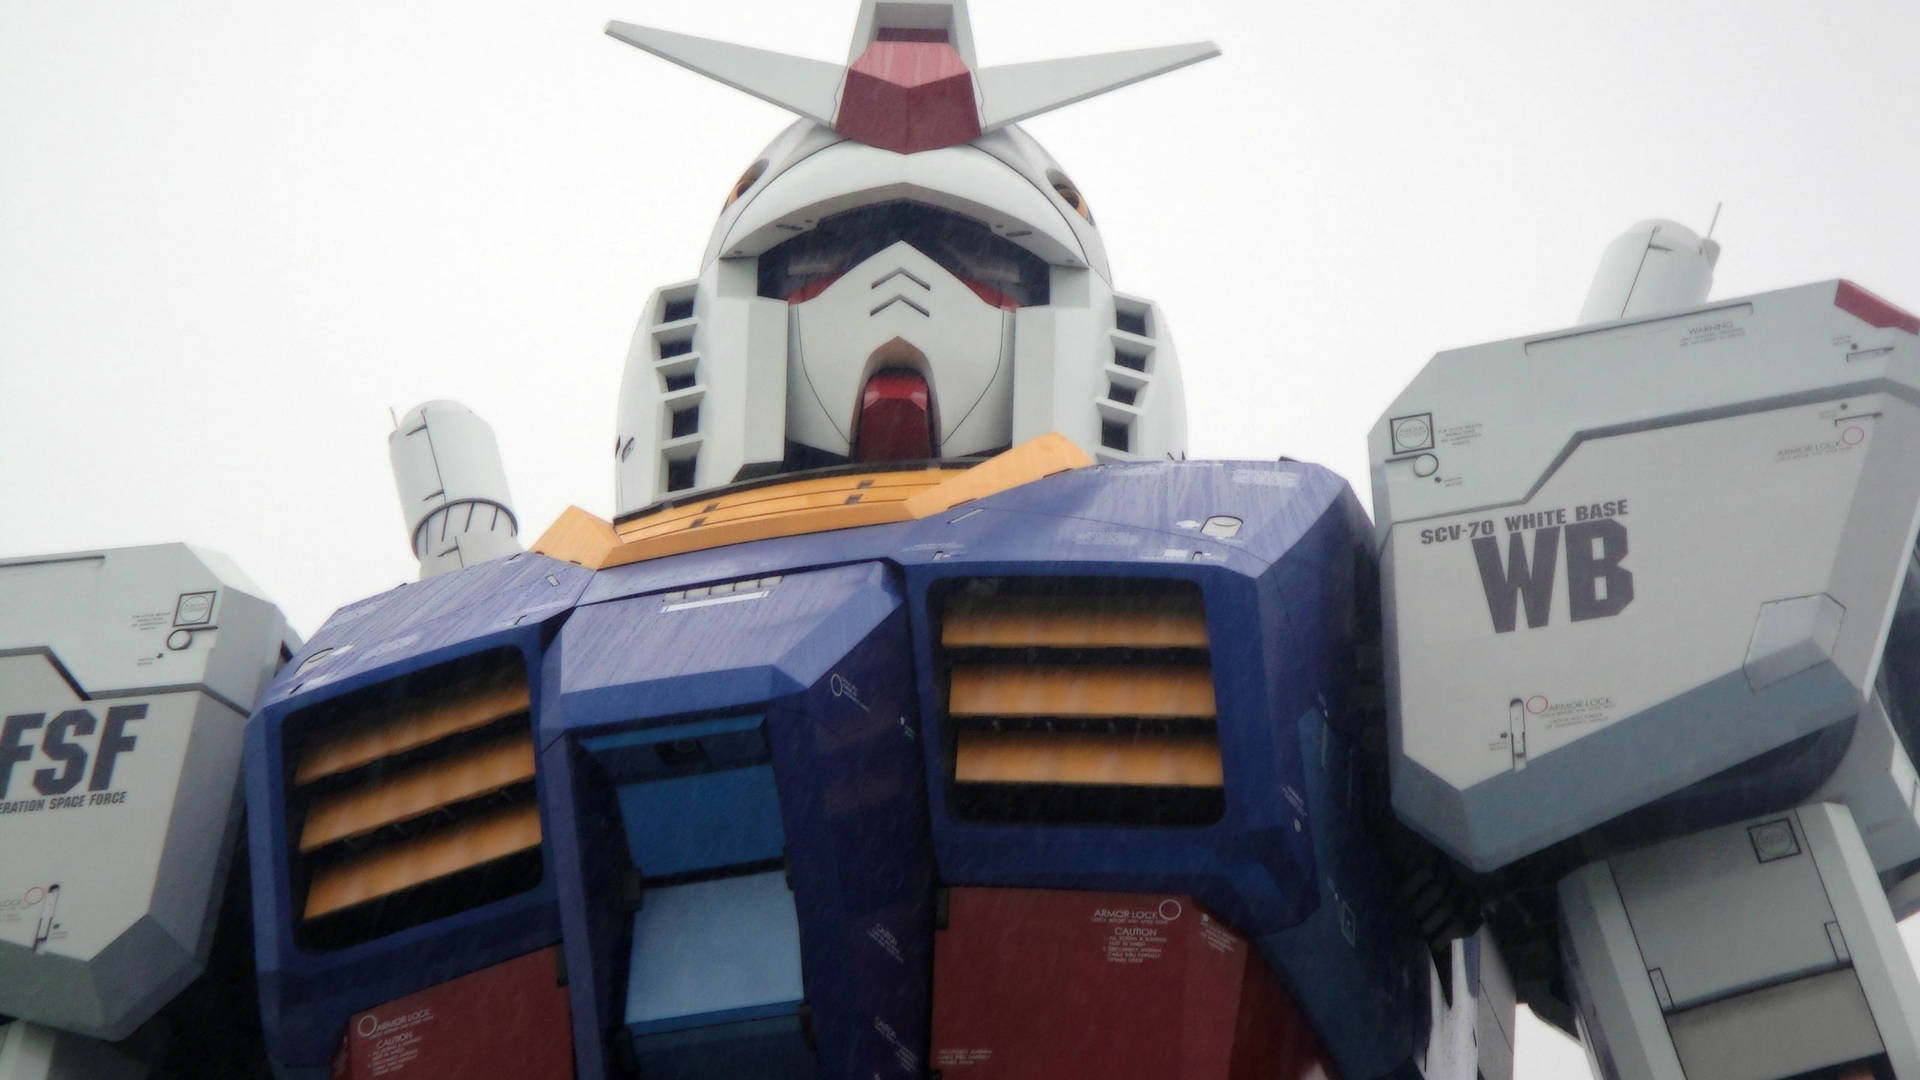 Gundam Suit Statue In Japan Picture